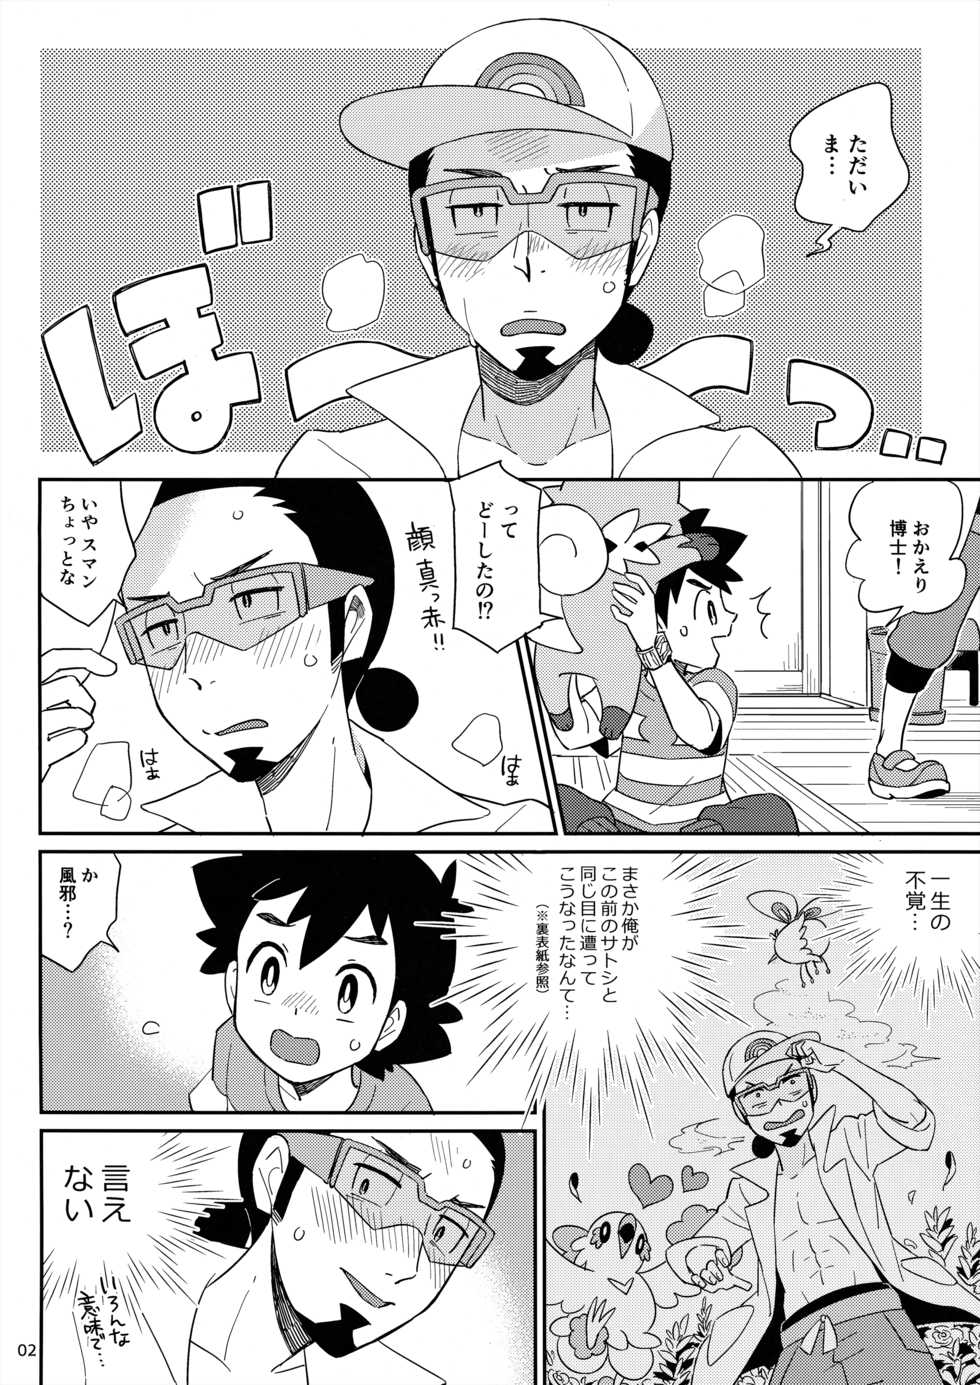 [YMC (Chihi)] Okaerinasai no Sono Ato wa (Pokémon) [2017-06-18] - Page 2